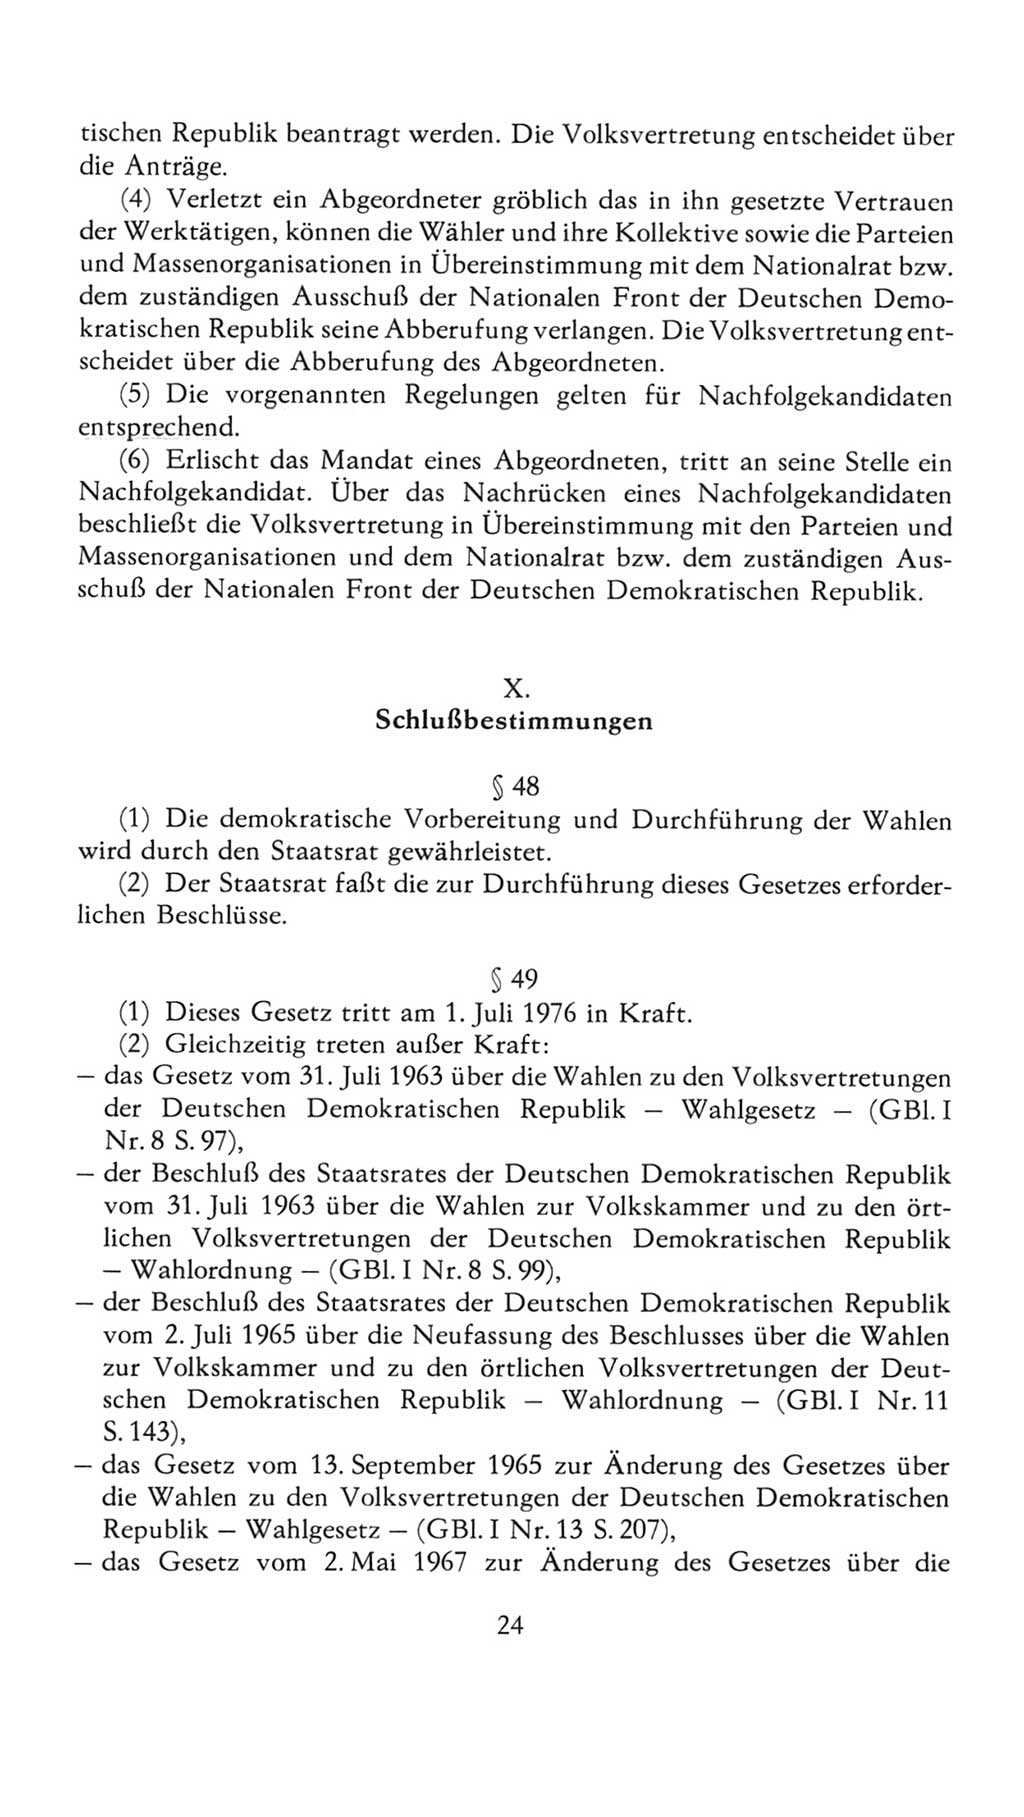 Volkskammer (VK) der Deutschen Demokratischen Republik (DDR), 7. Wahlperiode 1976-1981, Seite 24 (VK. DDR 7. WP. 1976-1981, S. 24)